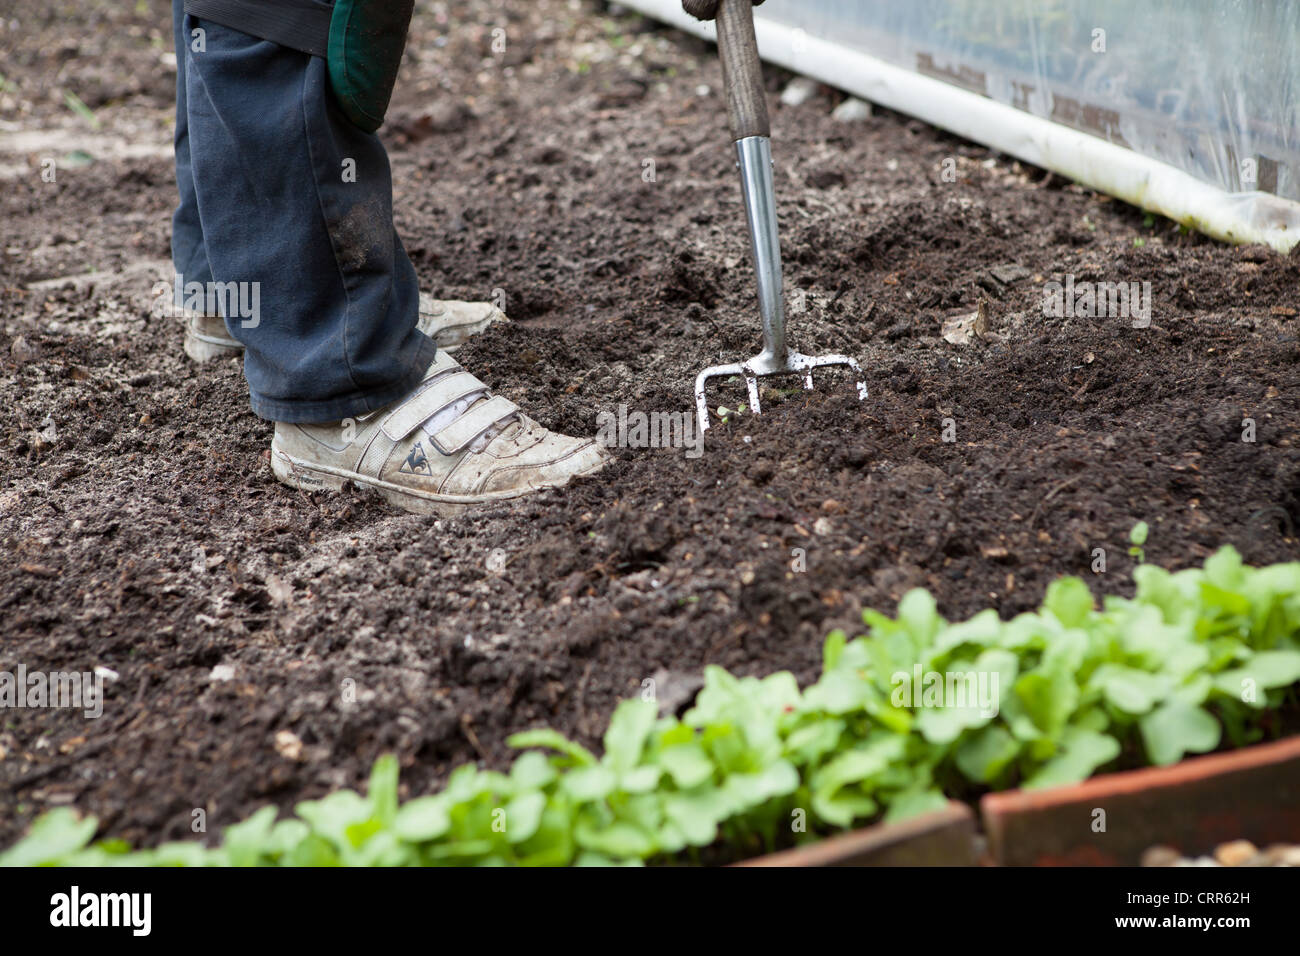 Ein Mann mit einer Garten Gabel wiederum über dem Boden bereit für die Bepflanzung. Rettich ist an der Front bereits gepflanzt. Stockfoto